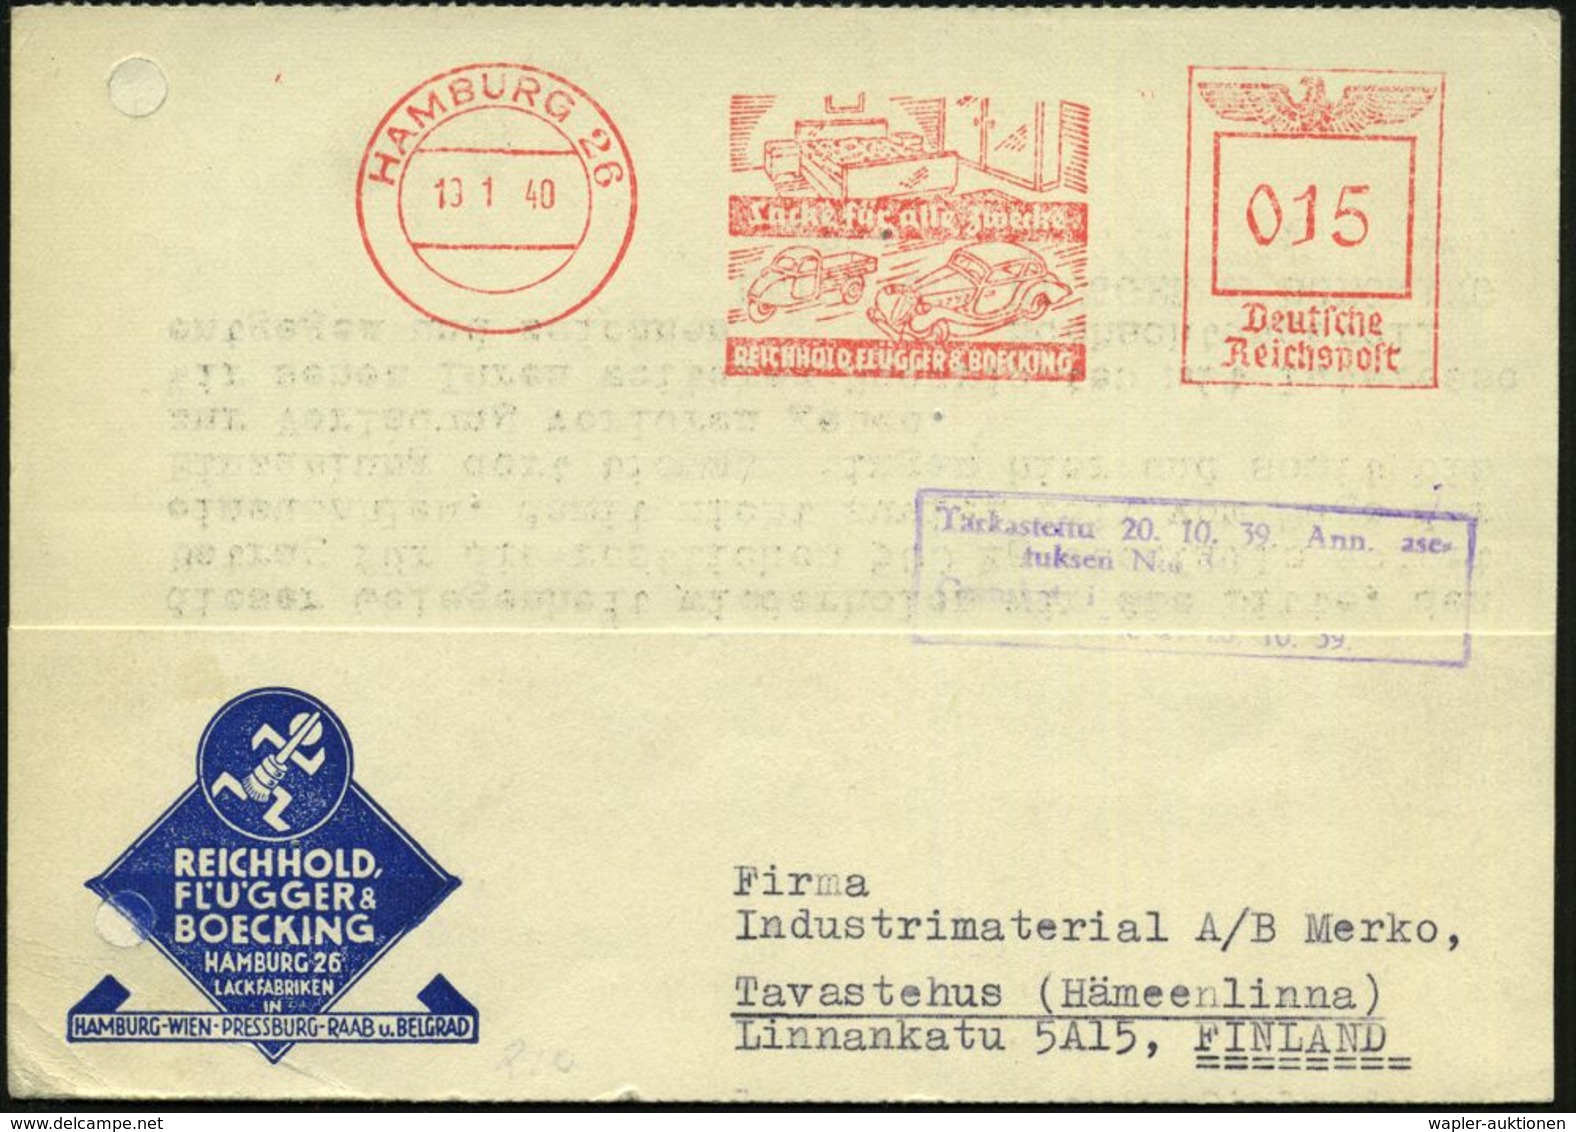 HAMBURG 26/ Lacke Für Alle Zwecke/ REICHHOLD,FLÜGGER & BOECKING 1940 (19.1.) AFS 015 Pf. = Dreirad-Klein-LKW, Typ "Golia - LKW